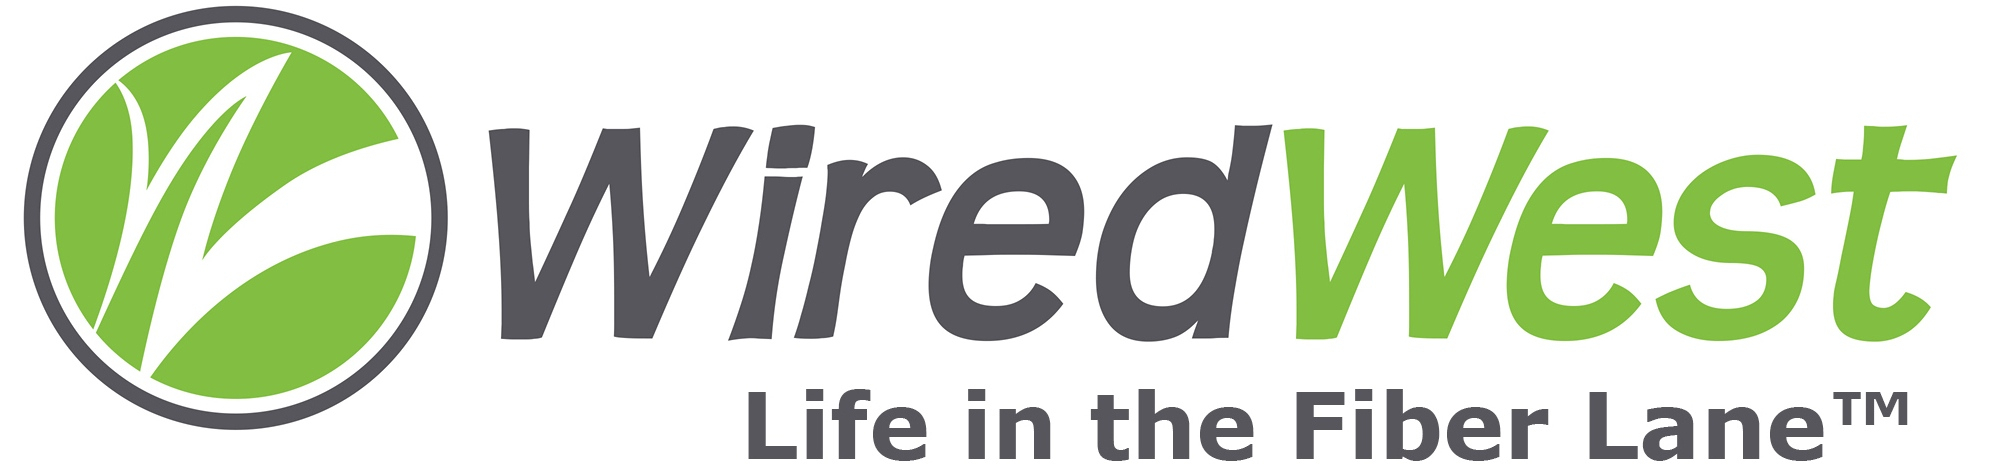 WiredWest Logo with Tagline